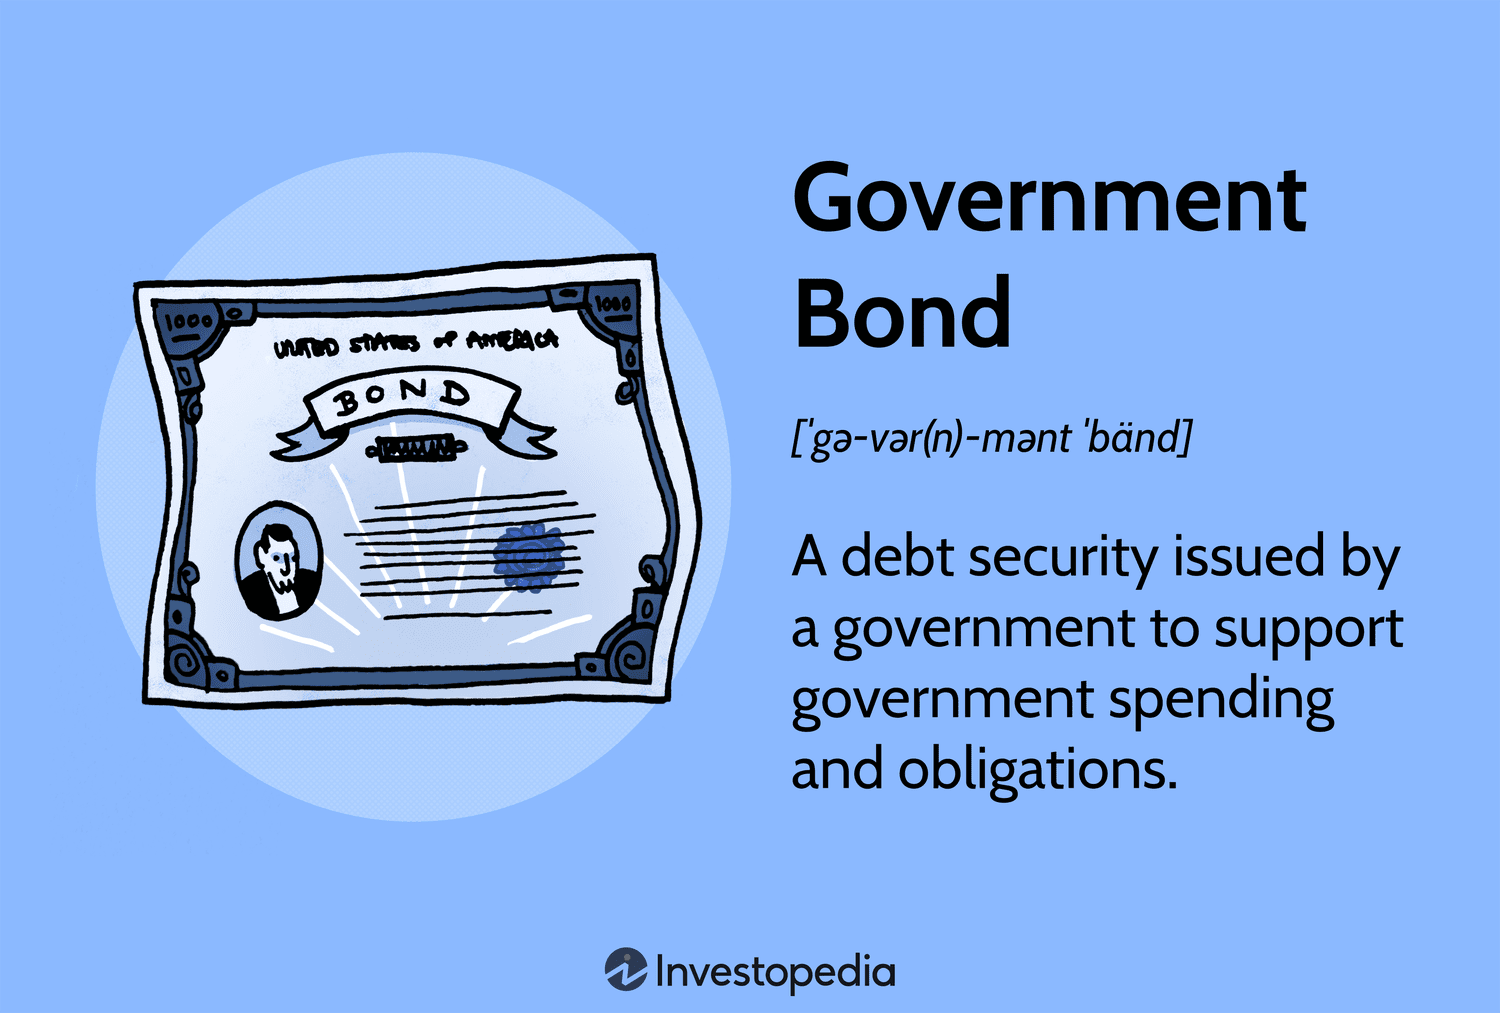 Sovereign Bond